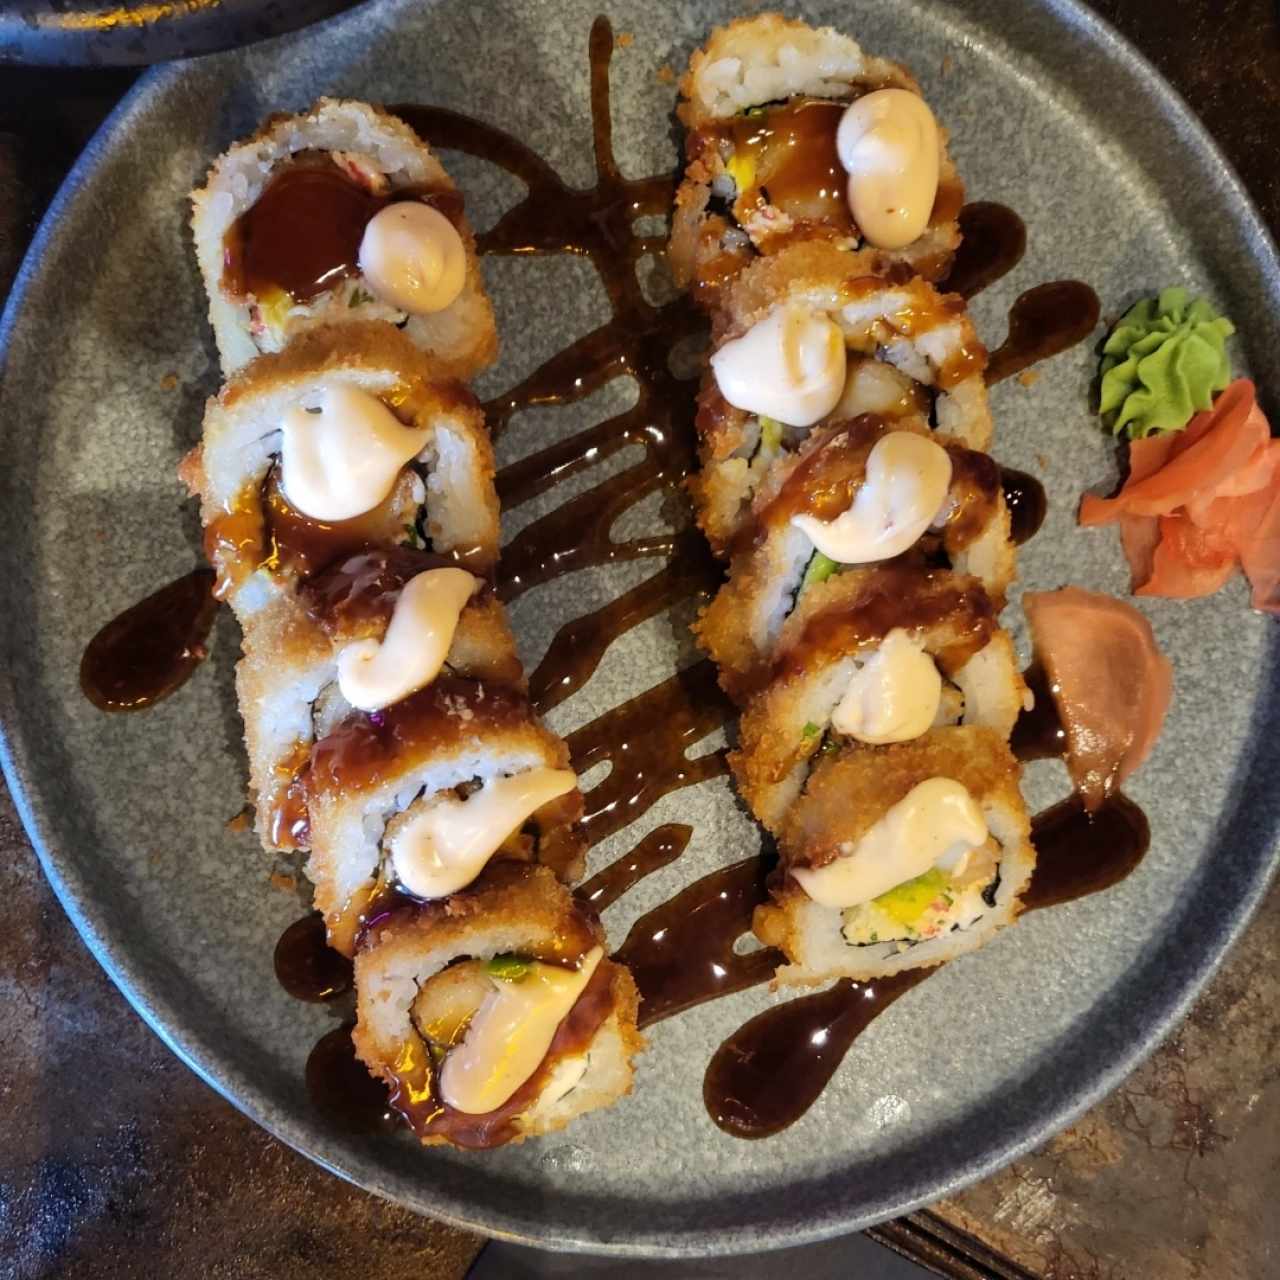 Sushi Rolls - Dinamita Roll